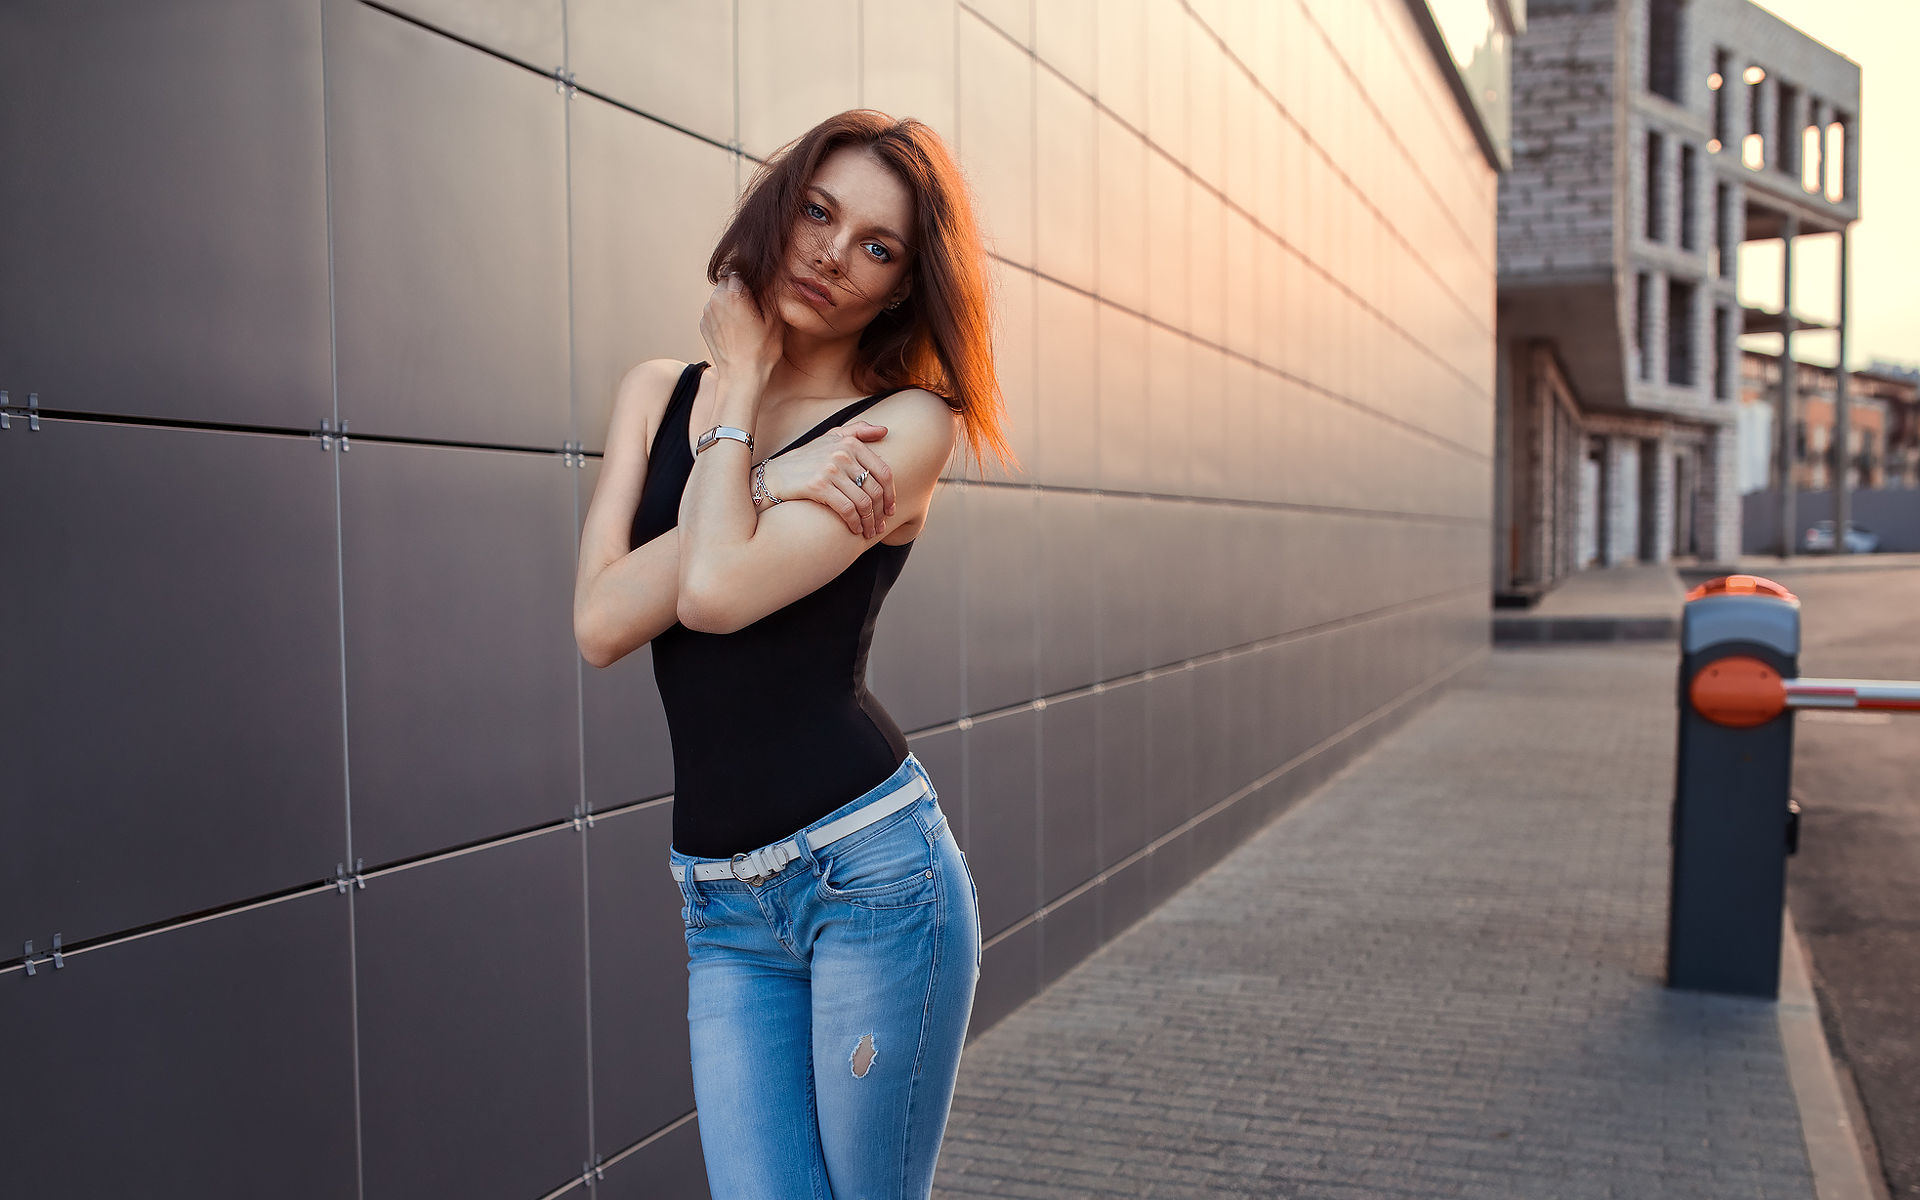 People 1920x1200 Dmitry Shulgin Katya tank top black top women model brunette jeans women outdoors